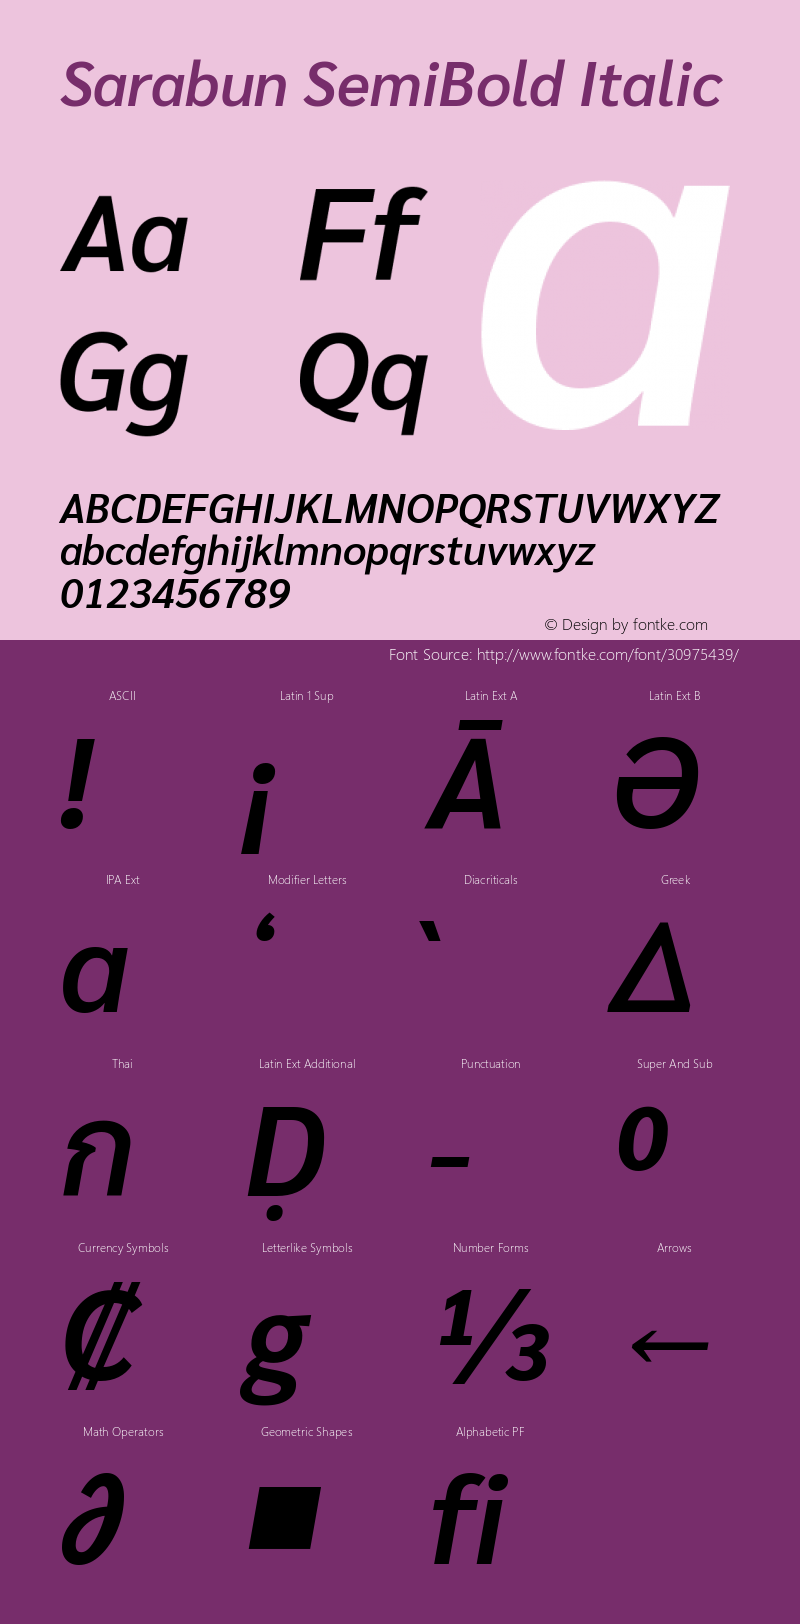 Sarabun SemiBold Italic Version 1.000; ttfautohint (v1.6)图片样张